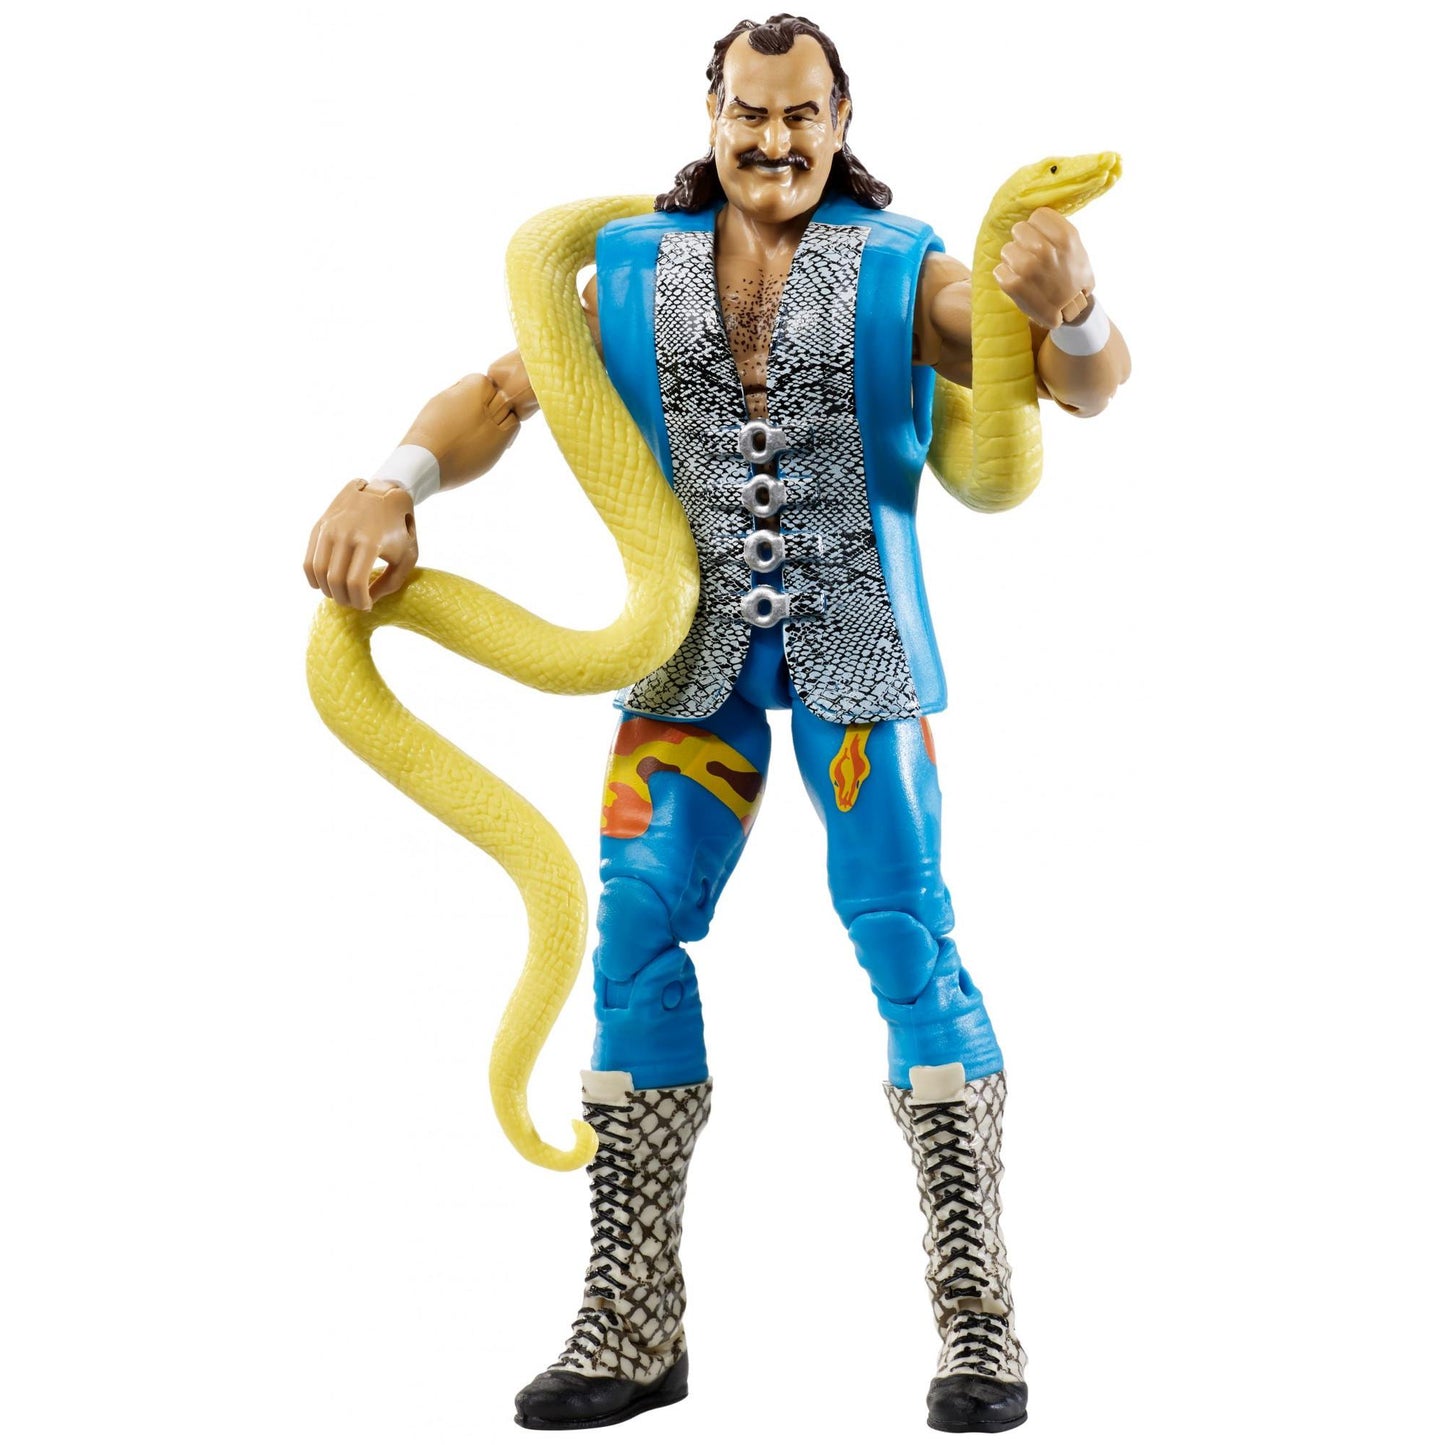 WWE Mattel Flashback Series 3 Jake "The Snake" Roberts [Exclusive]